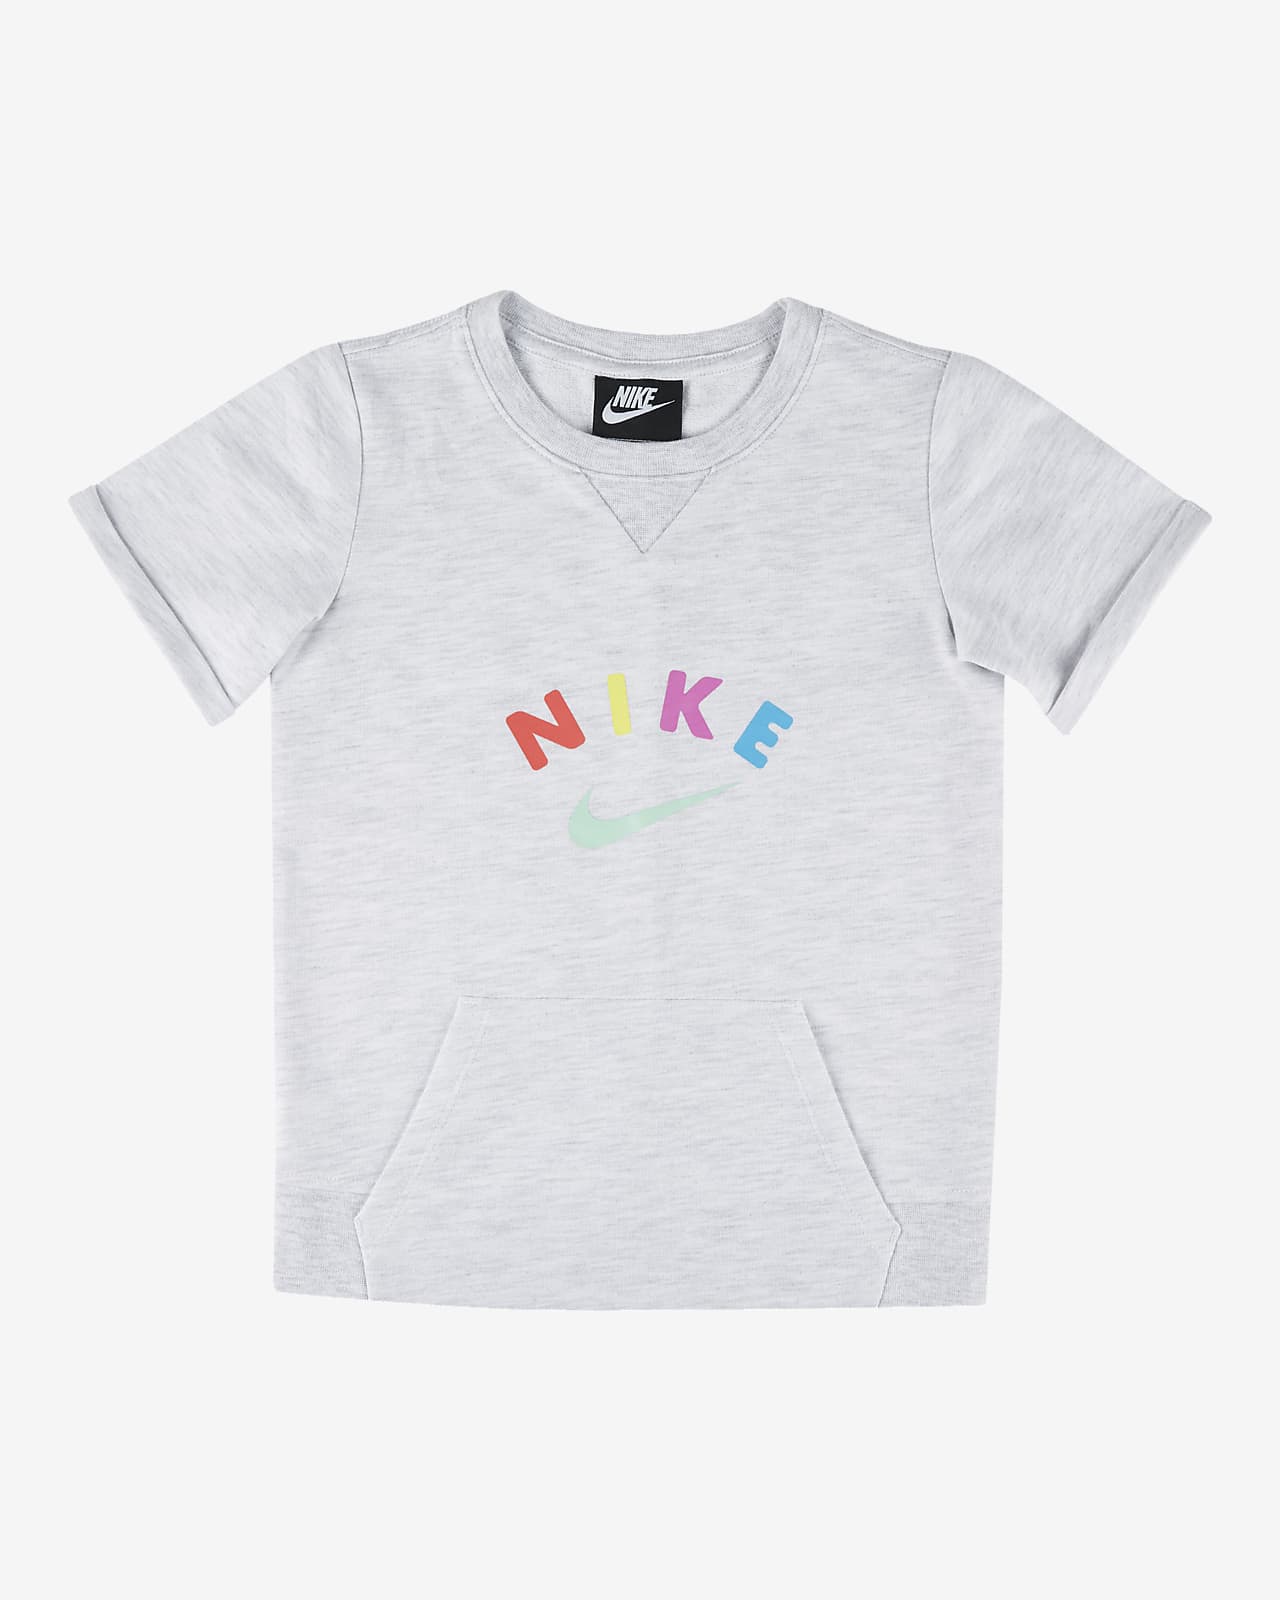 Nike 幼童短袖圆领上衣